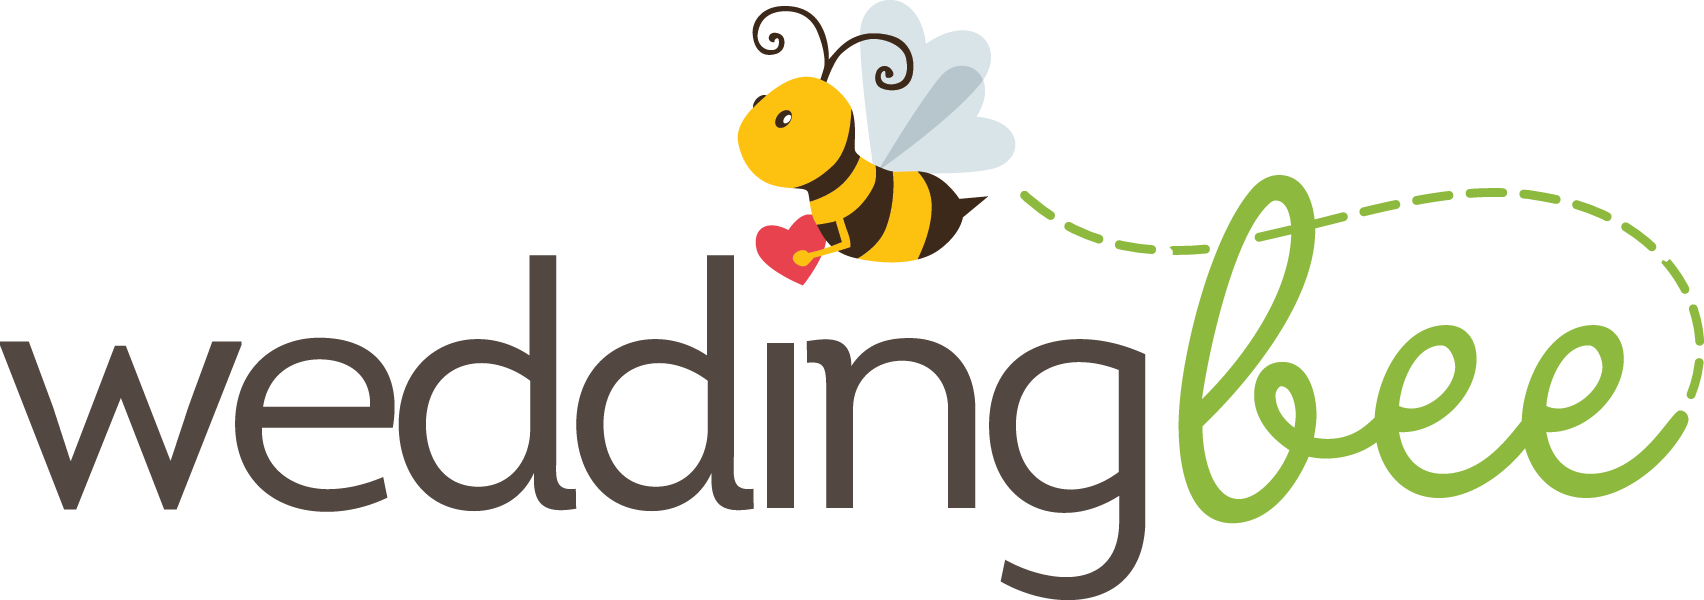 Wedding-Bee-Logo.png